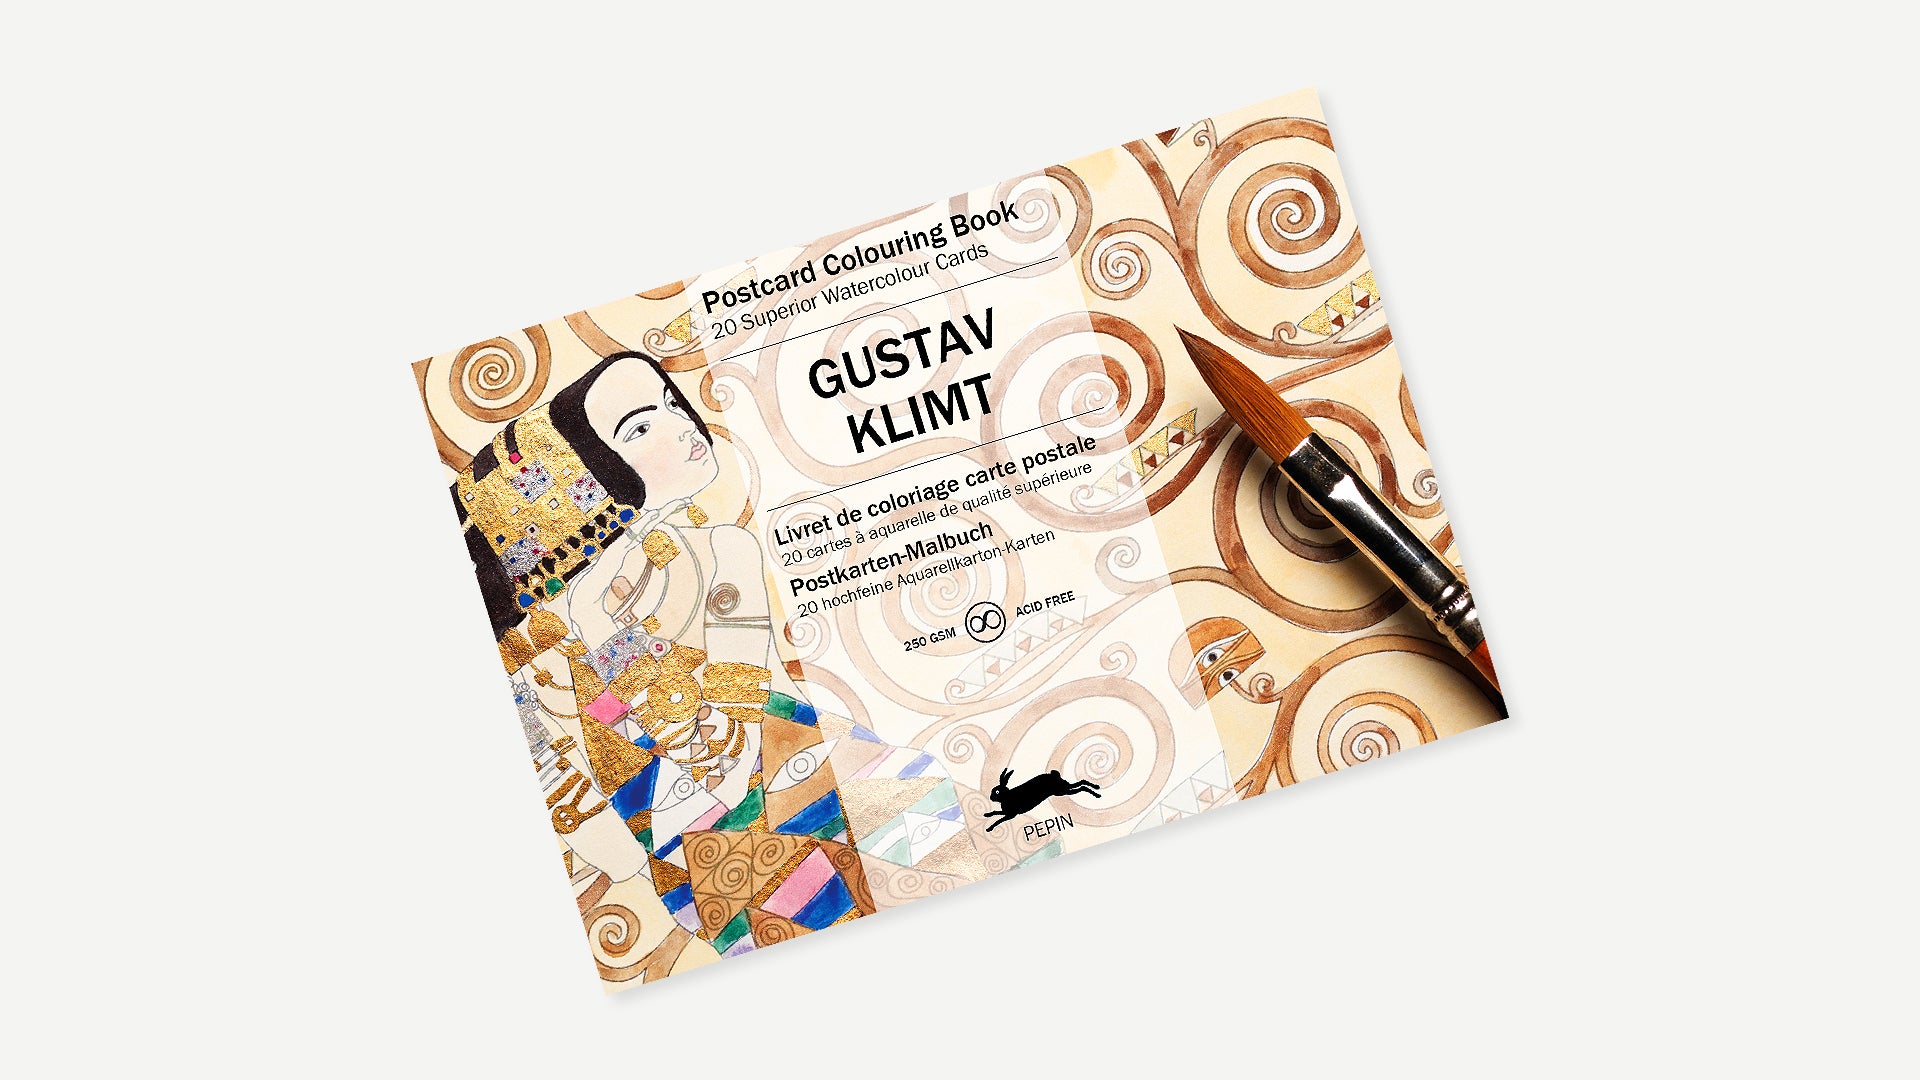 Postcard Coloring Book - Gustav Klimt